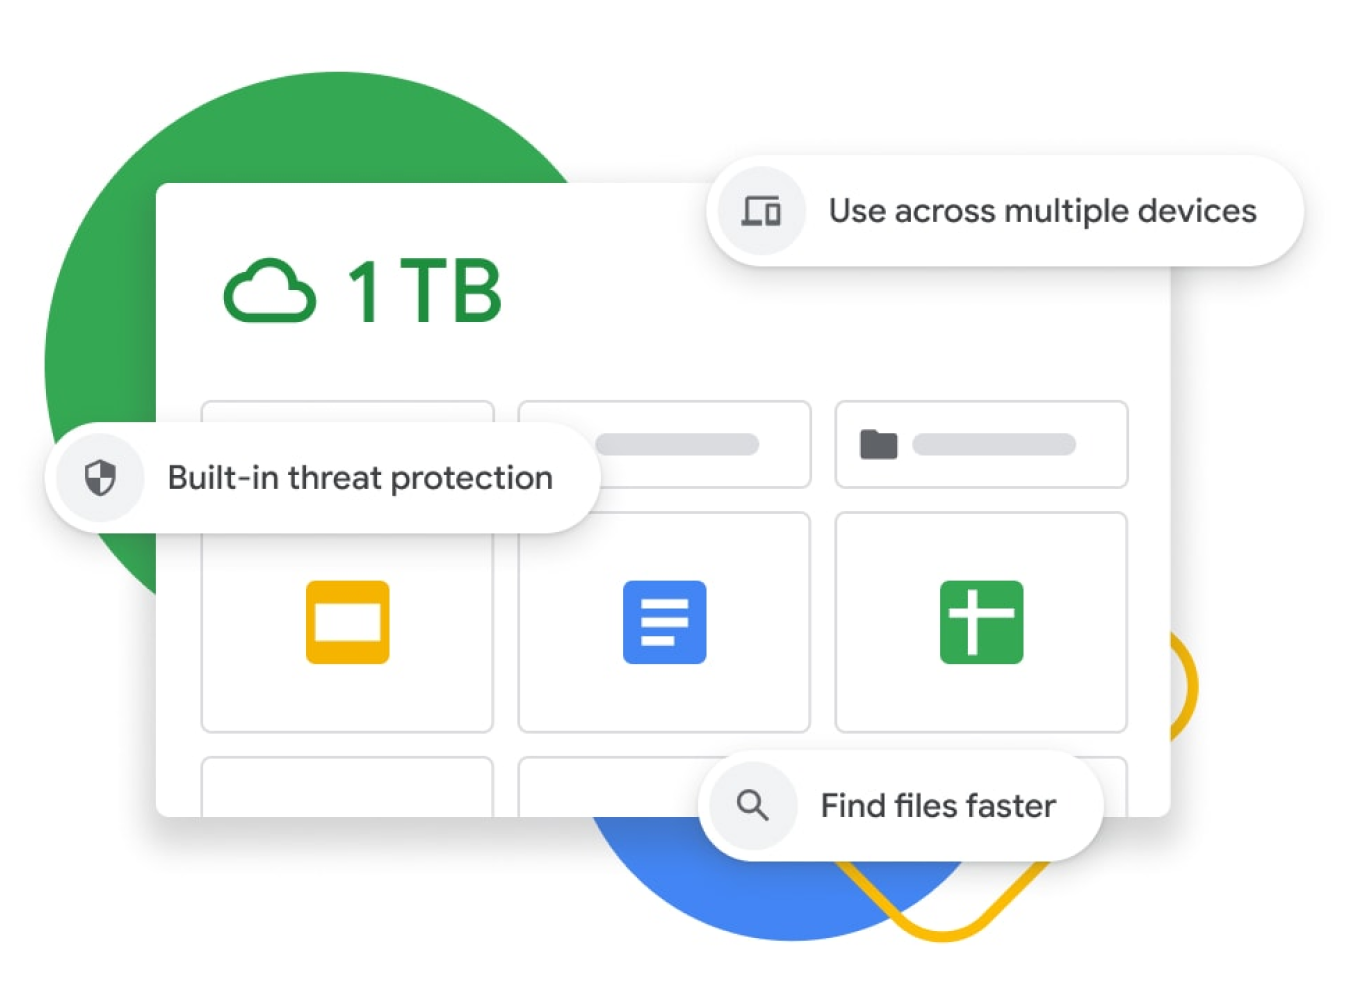 Grafisk illustration av en Google Drive-översikt med 1 TB lagringsutrymme, inbyggt hotskydd, synkronisering av flera enheter samt förbättrad sökfunktion. 